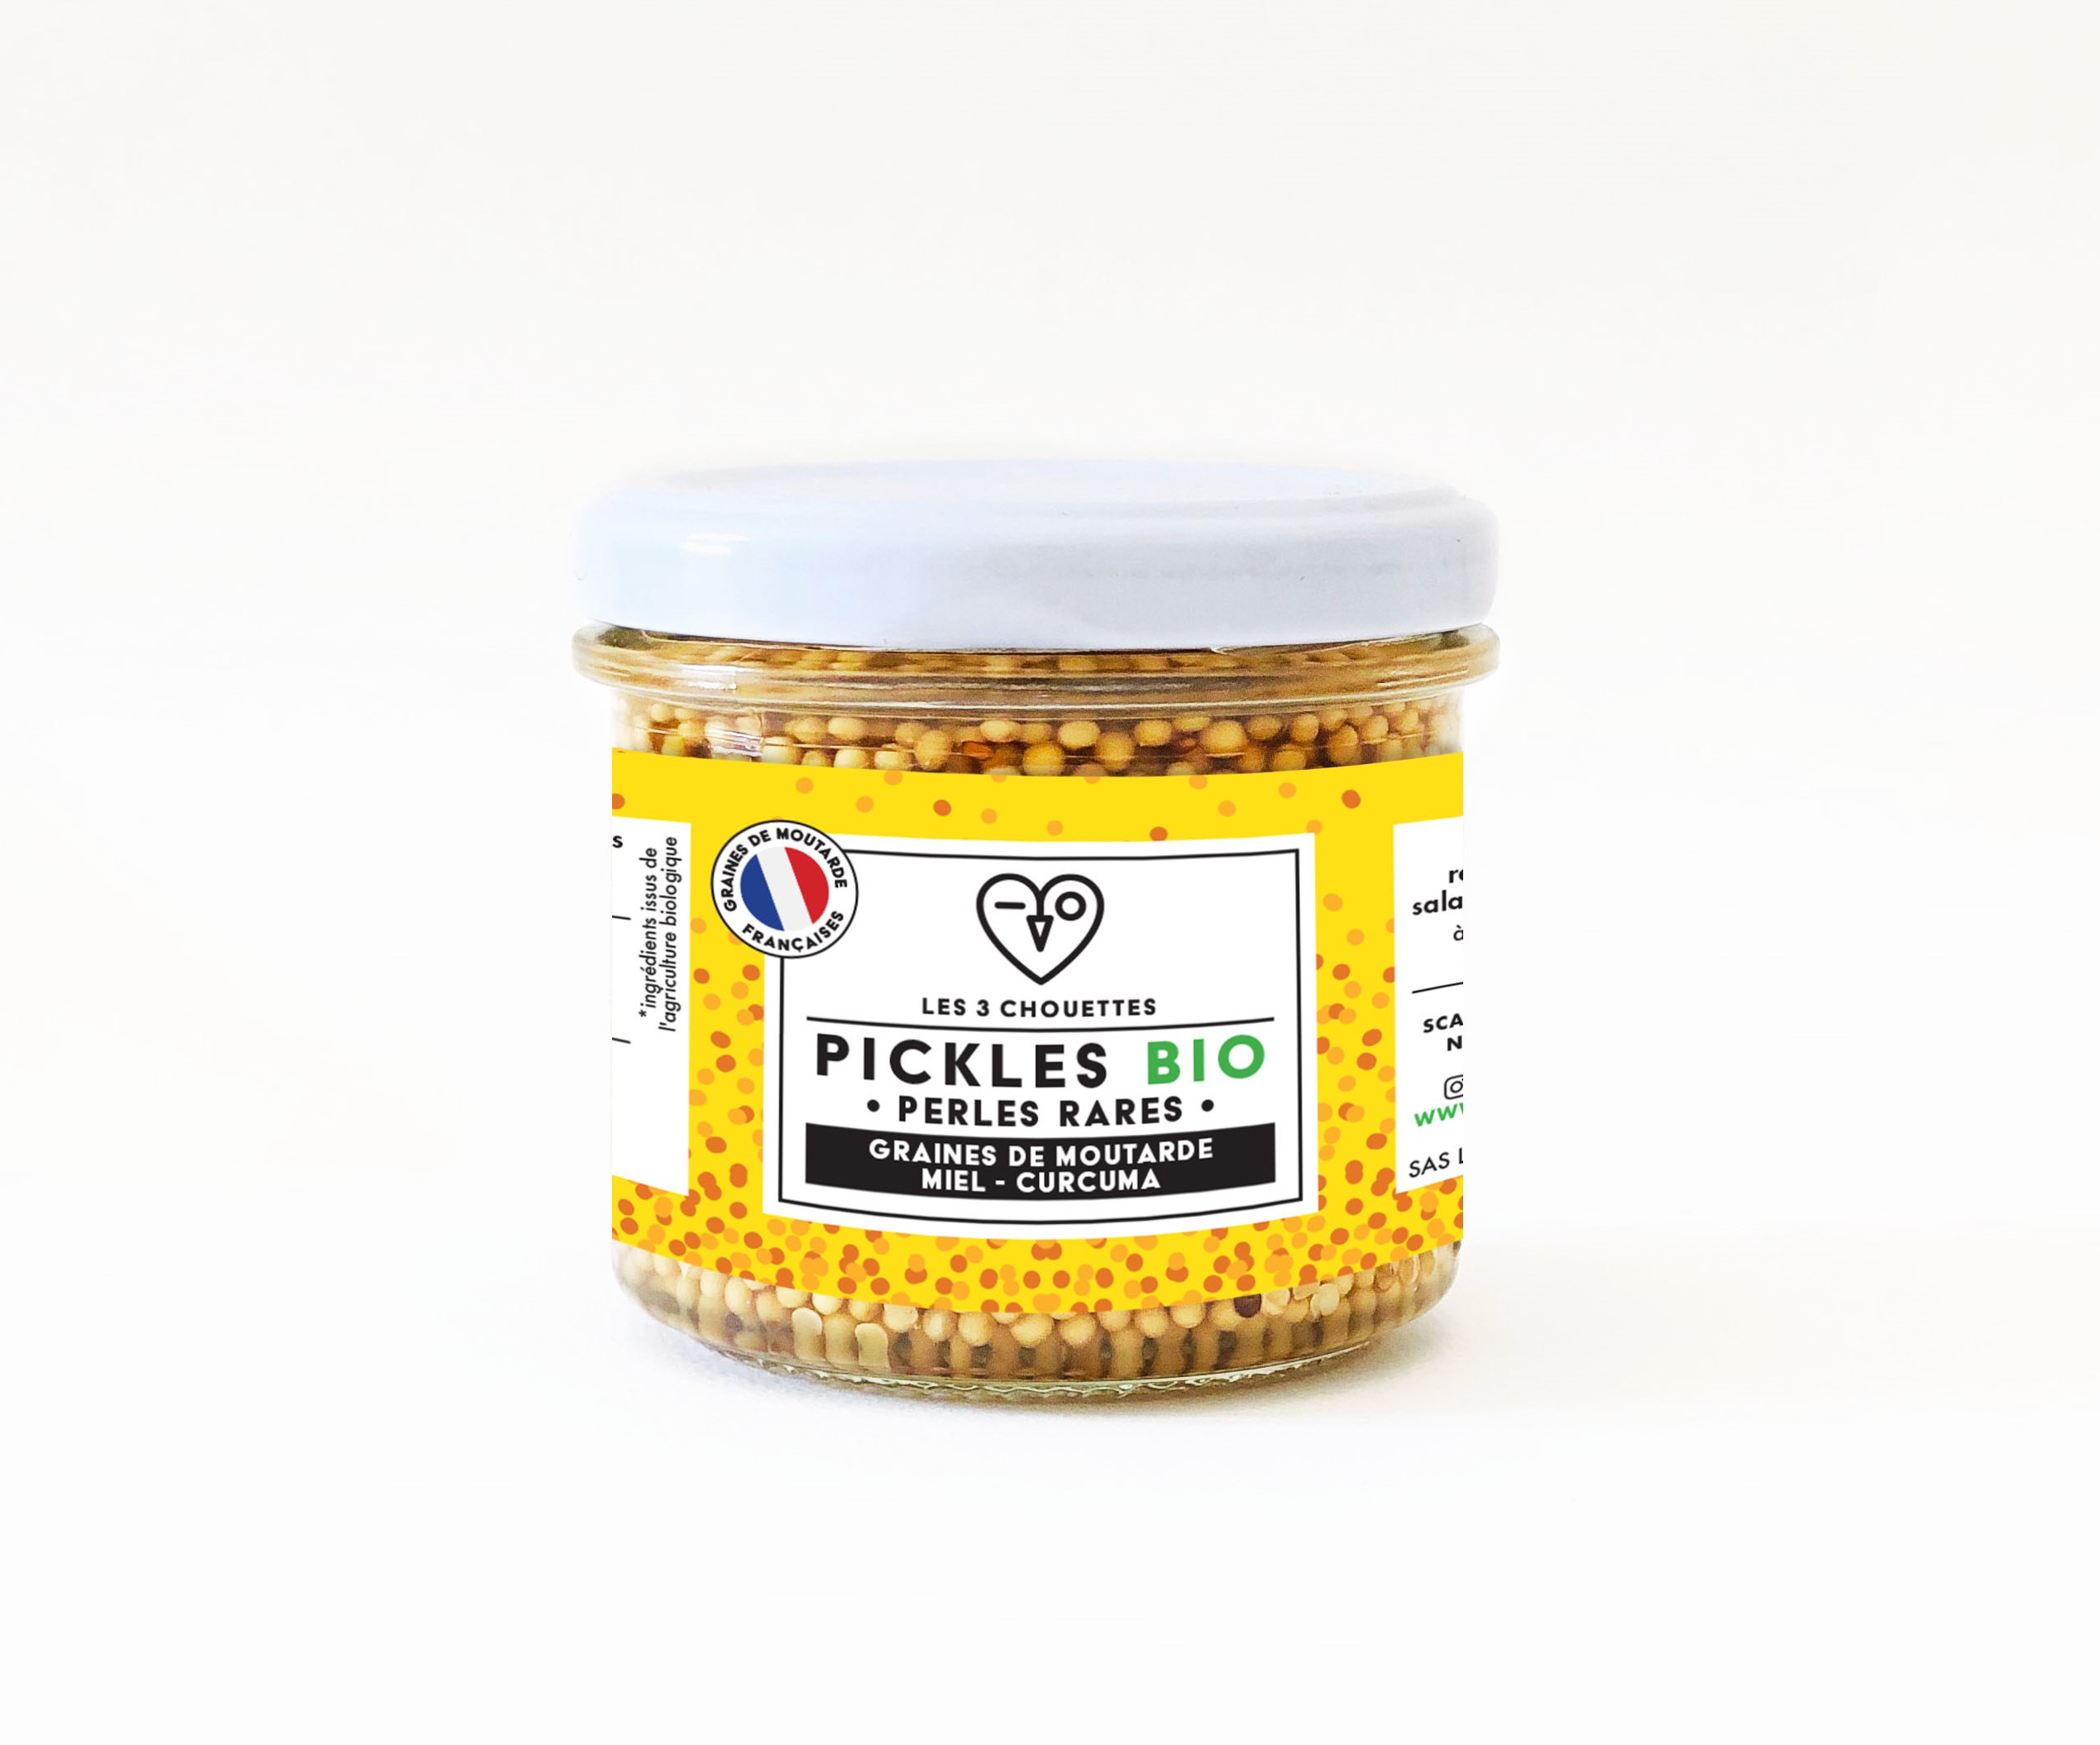 packshot picklesgrainesdemoutarde miel LES3CHOUETTES - Les 3 chouettes réinventent la moutarde